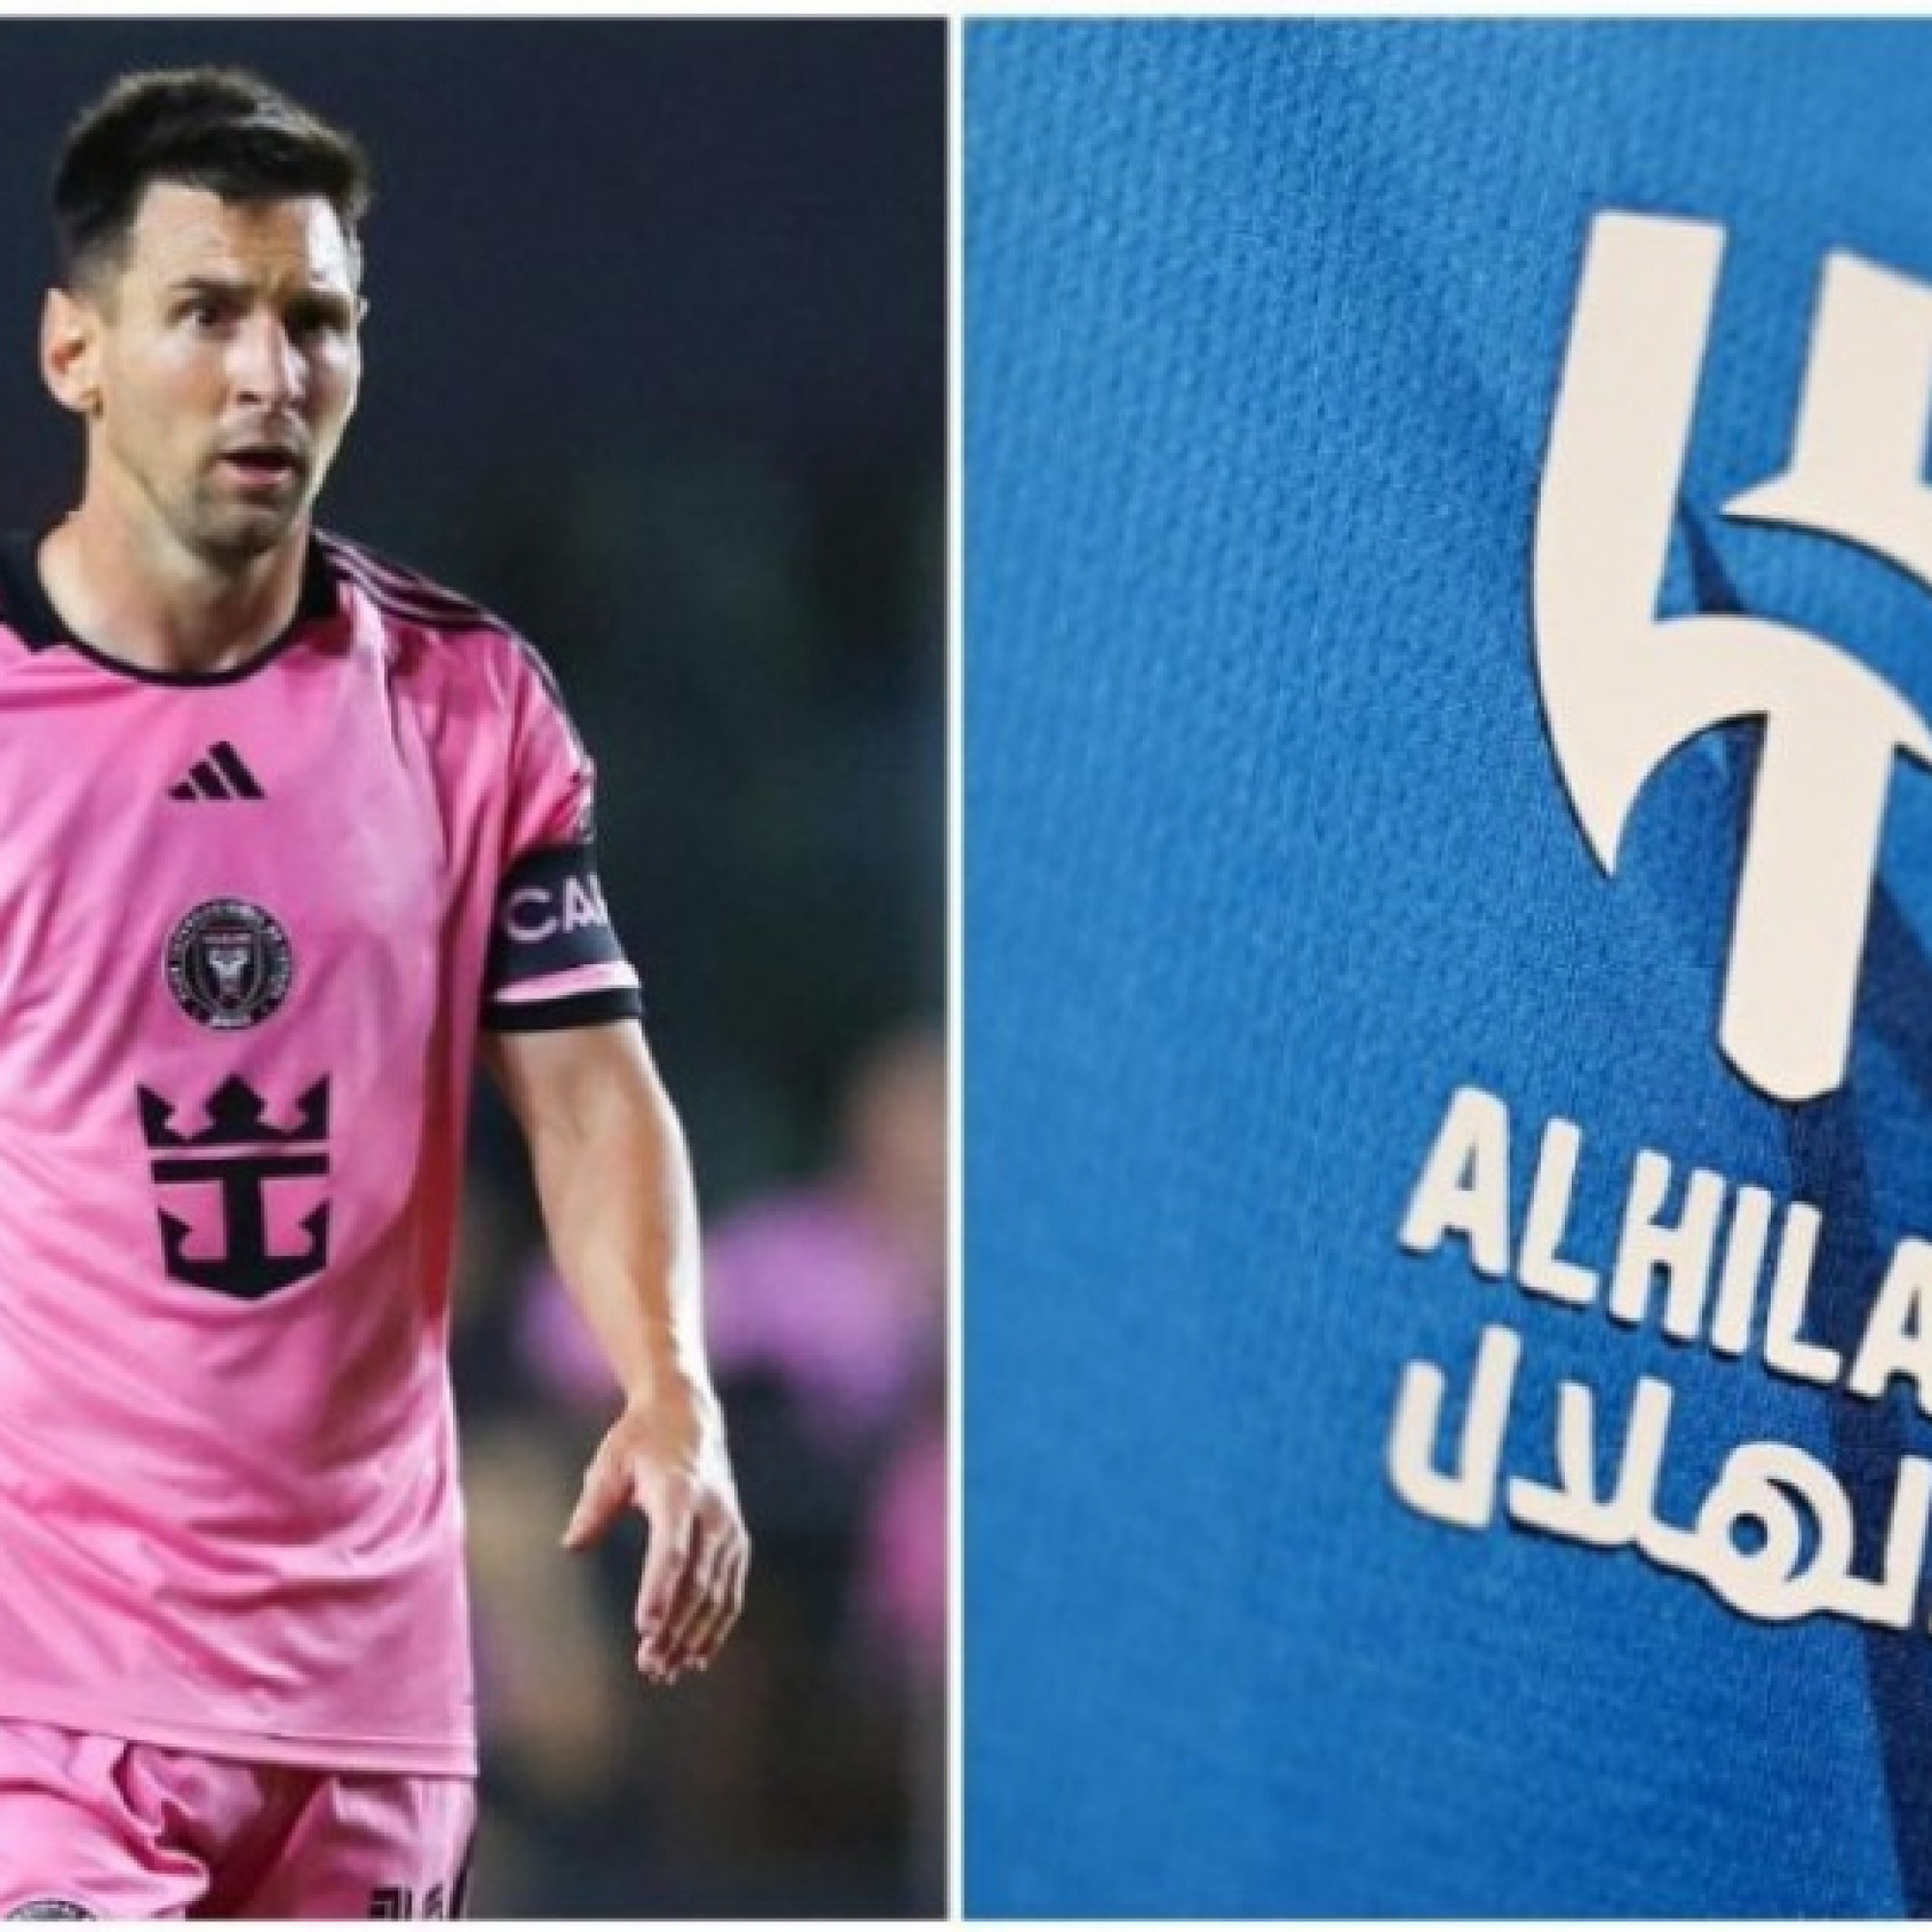  - Tiết lộ sốc: Messi từ chối 1,4 tỷ euro của Al Hilal, lộ lý do sang Mỹ thi đấu